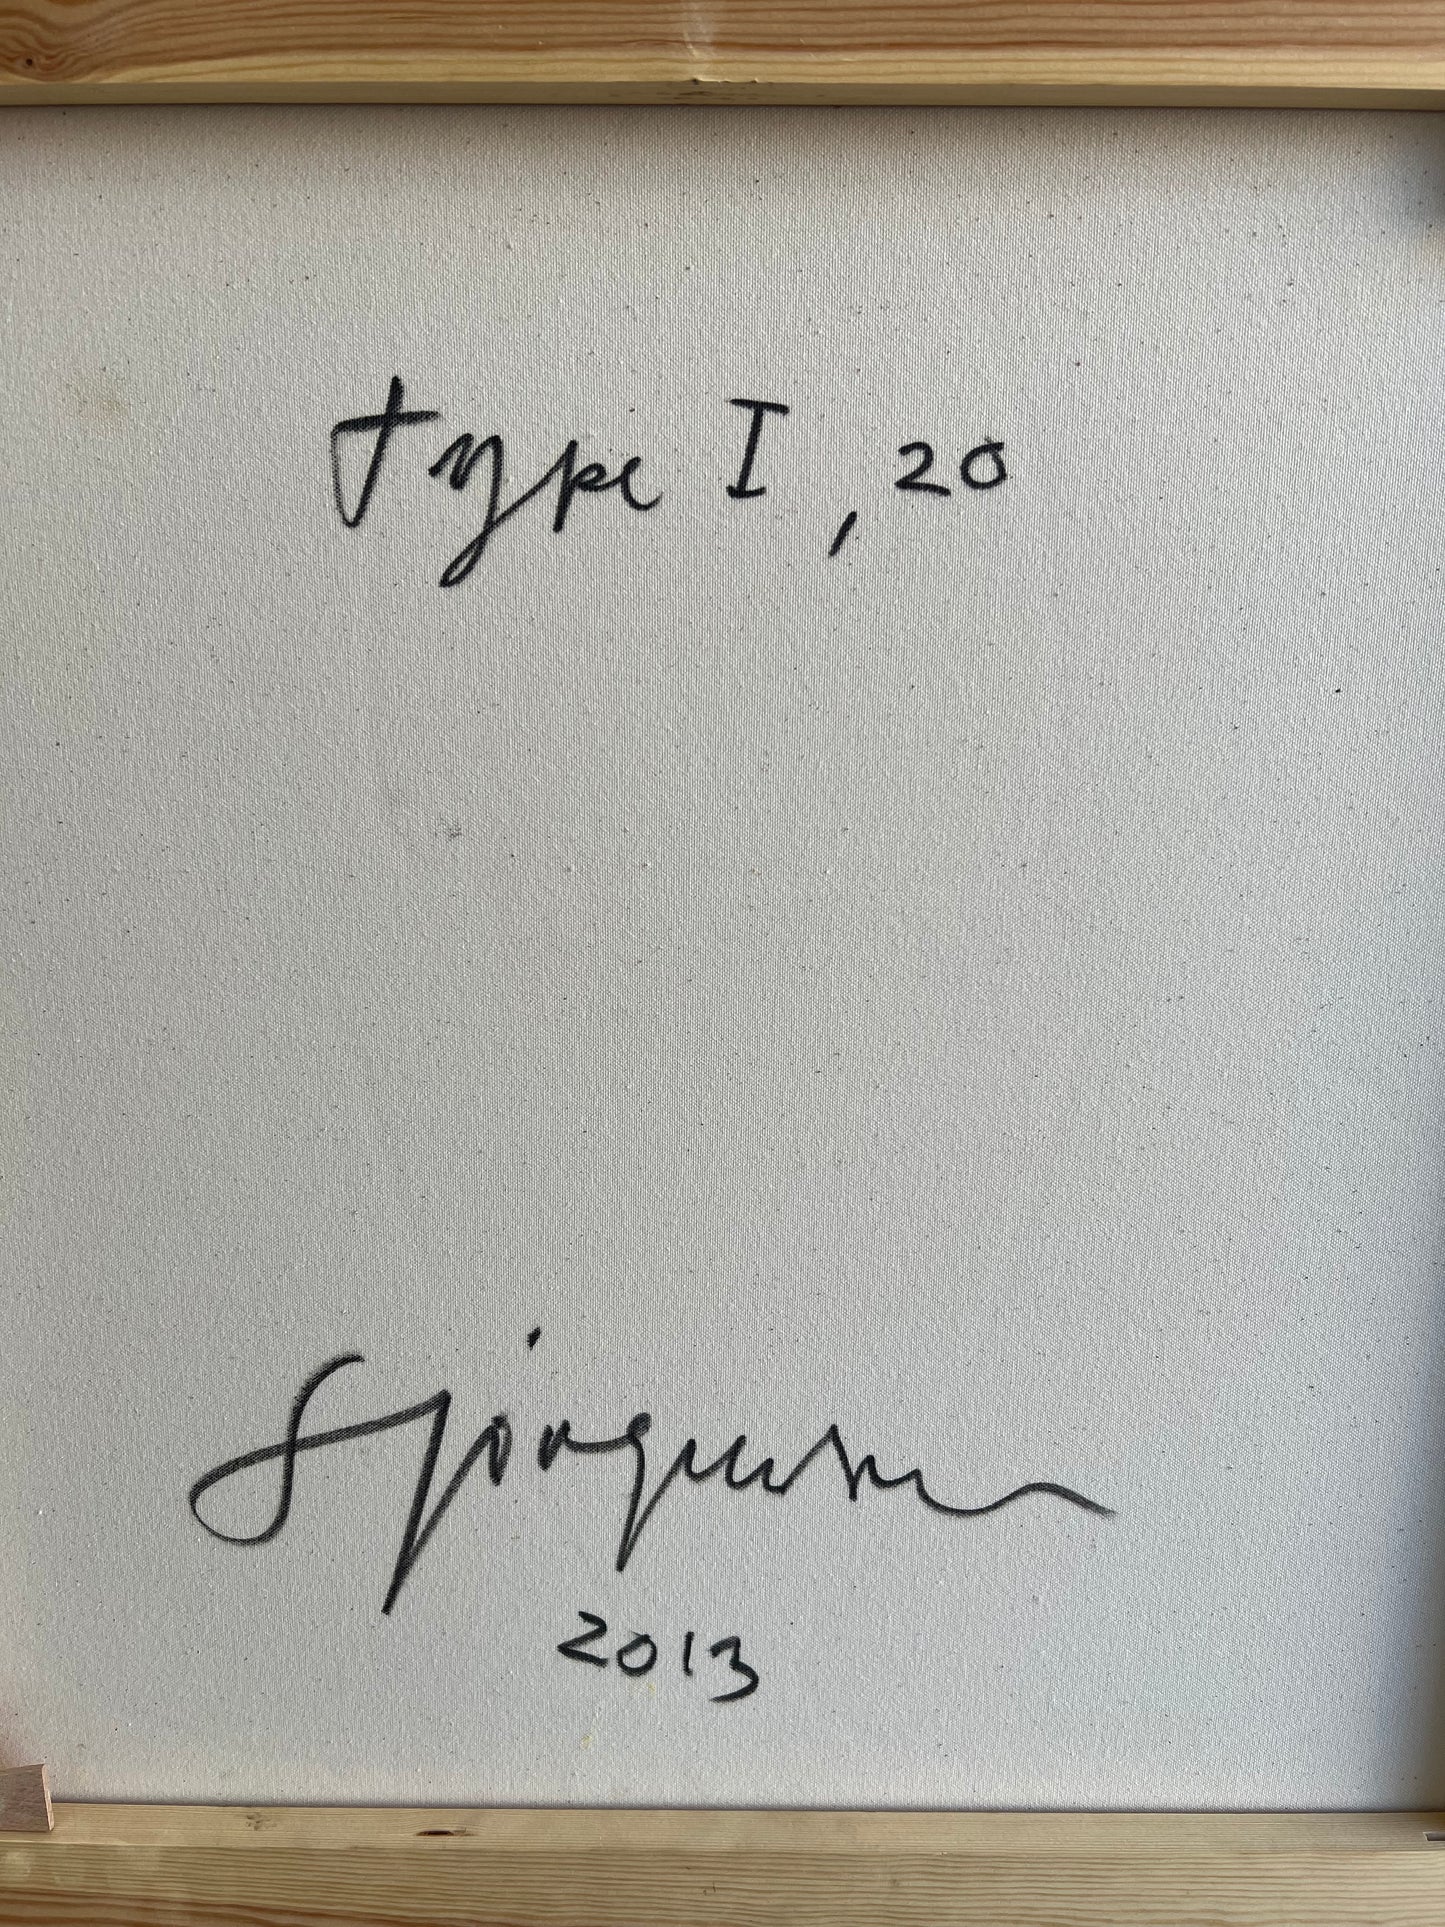 Steffen Jørgensen. “Type I”, 2013